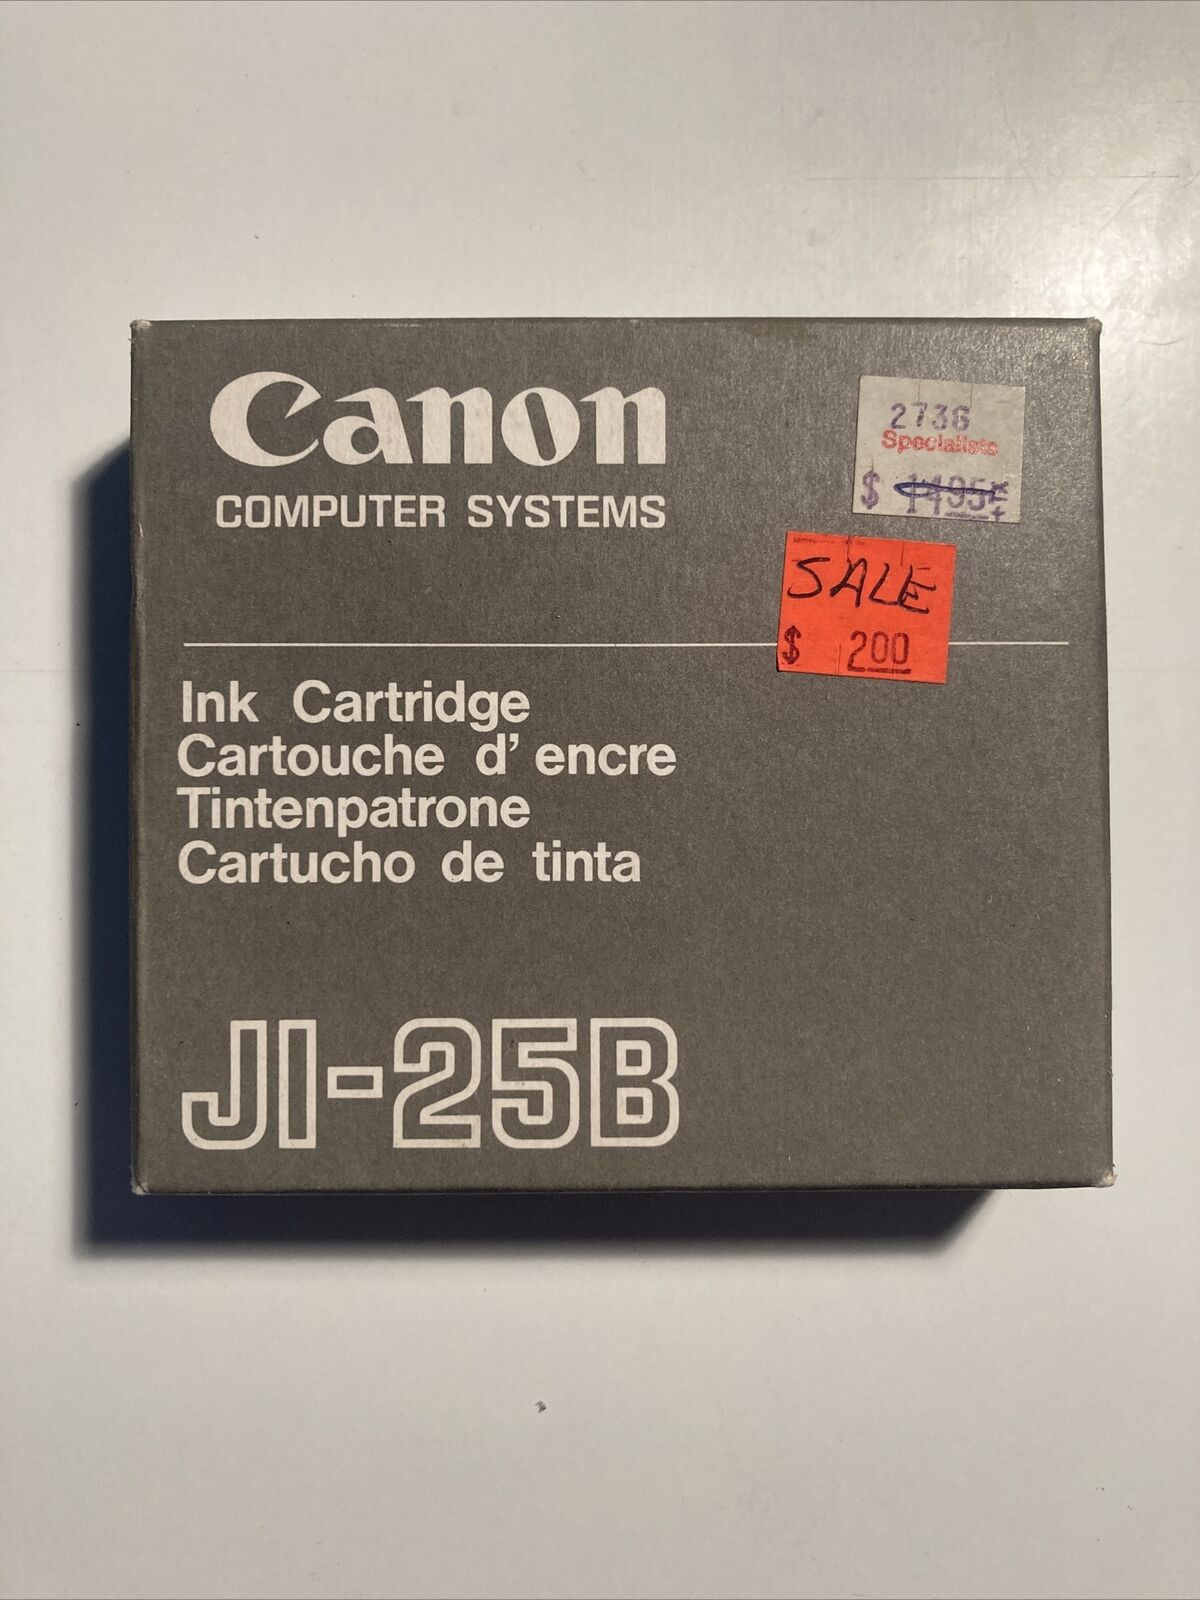 NOS Canon JI-25b Ink Cartridge Black Vintage Printer